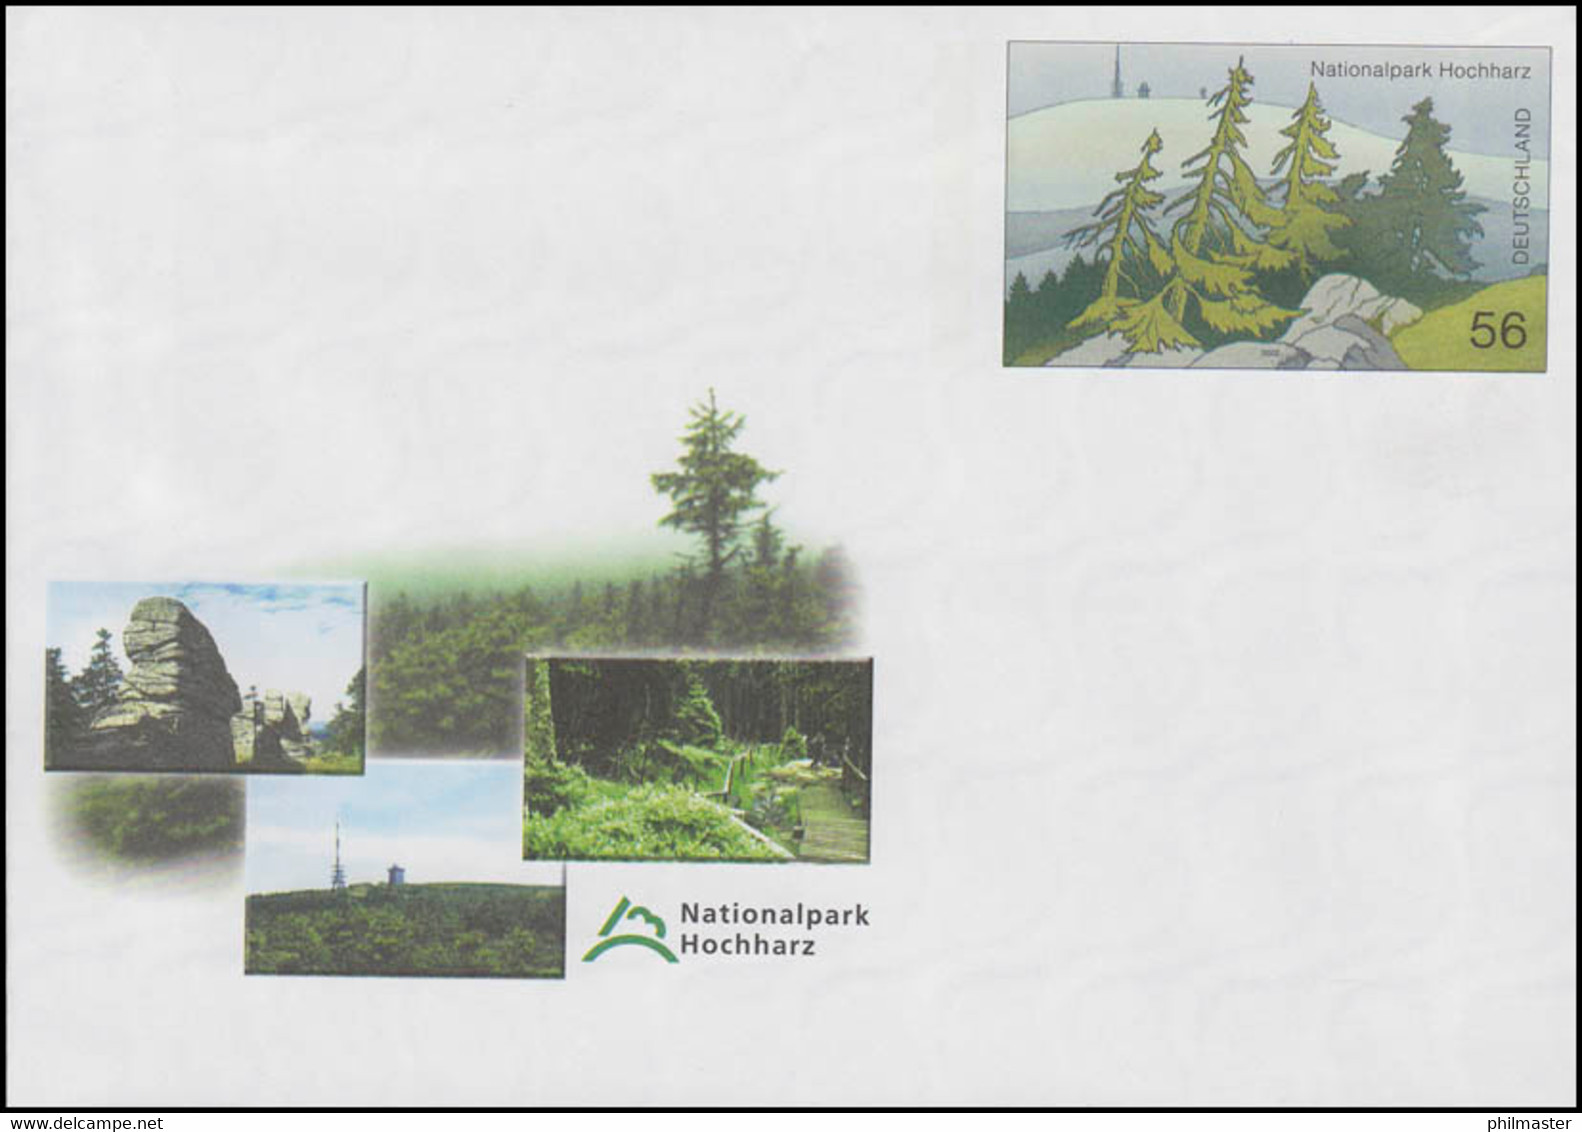 USo 39 Nationalpark Hochharz 2002, Postfrisch - Enveloppes - Neuves